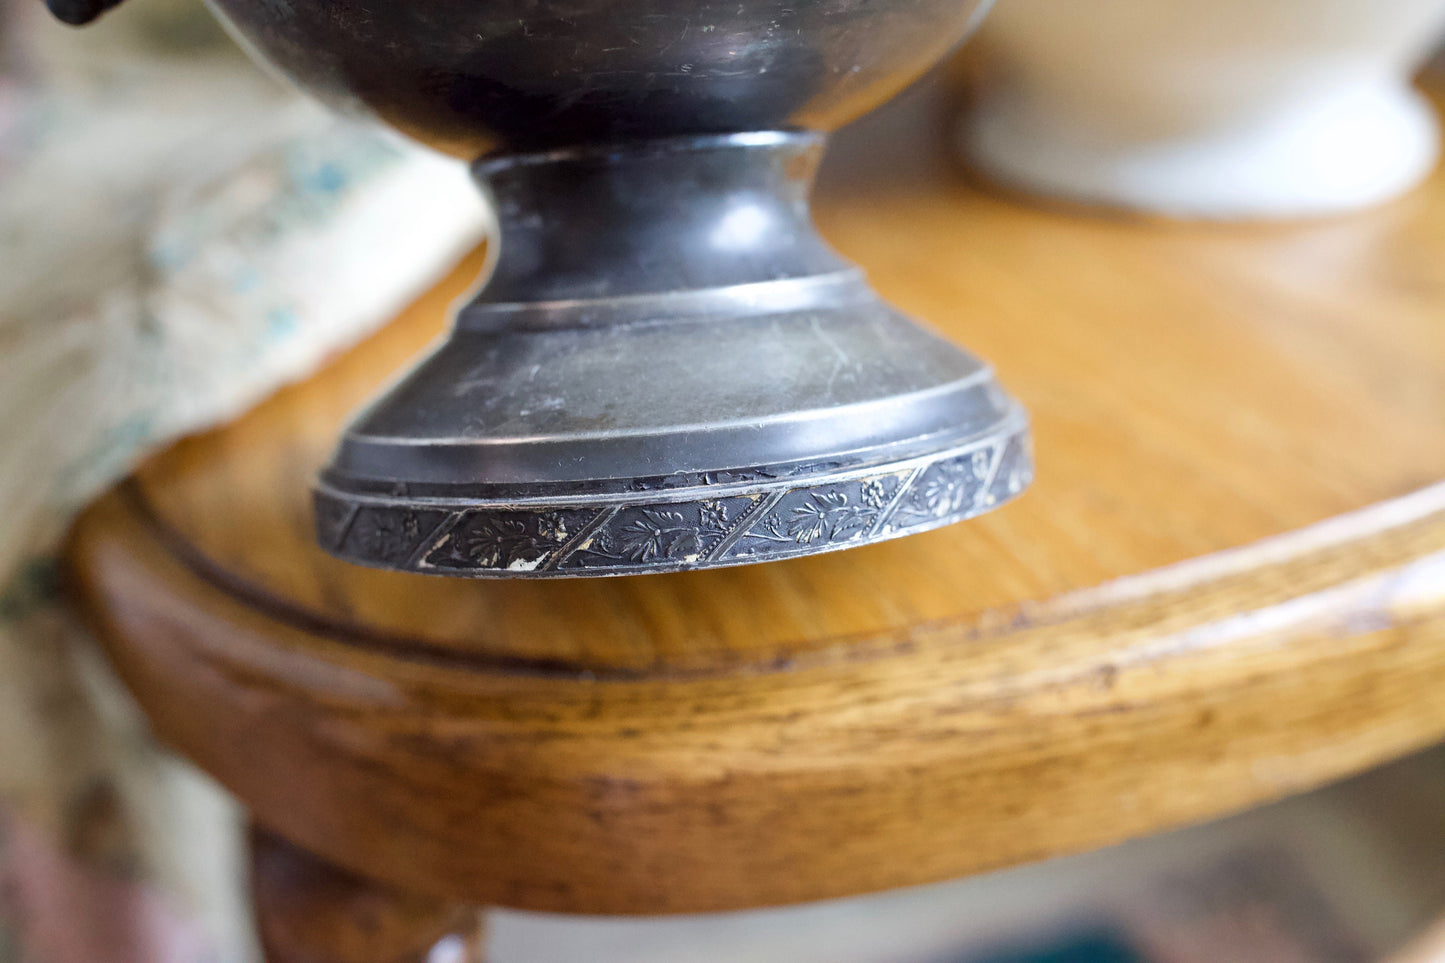 Antique TeaPot- Etched- Heart, Silver Antique Teapot-Pelton Bros & Co. Teapot Triple Plate